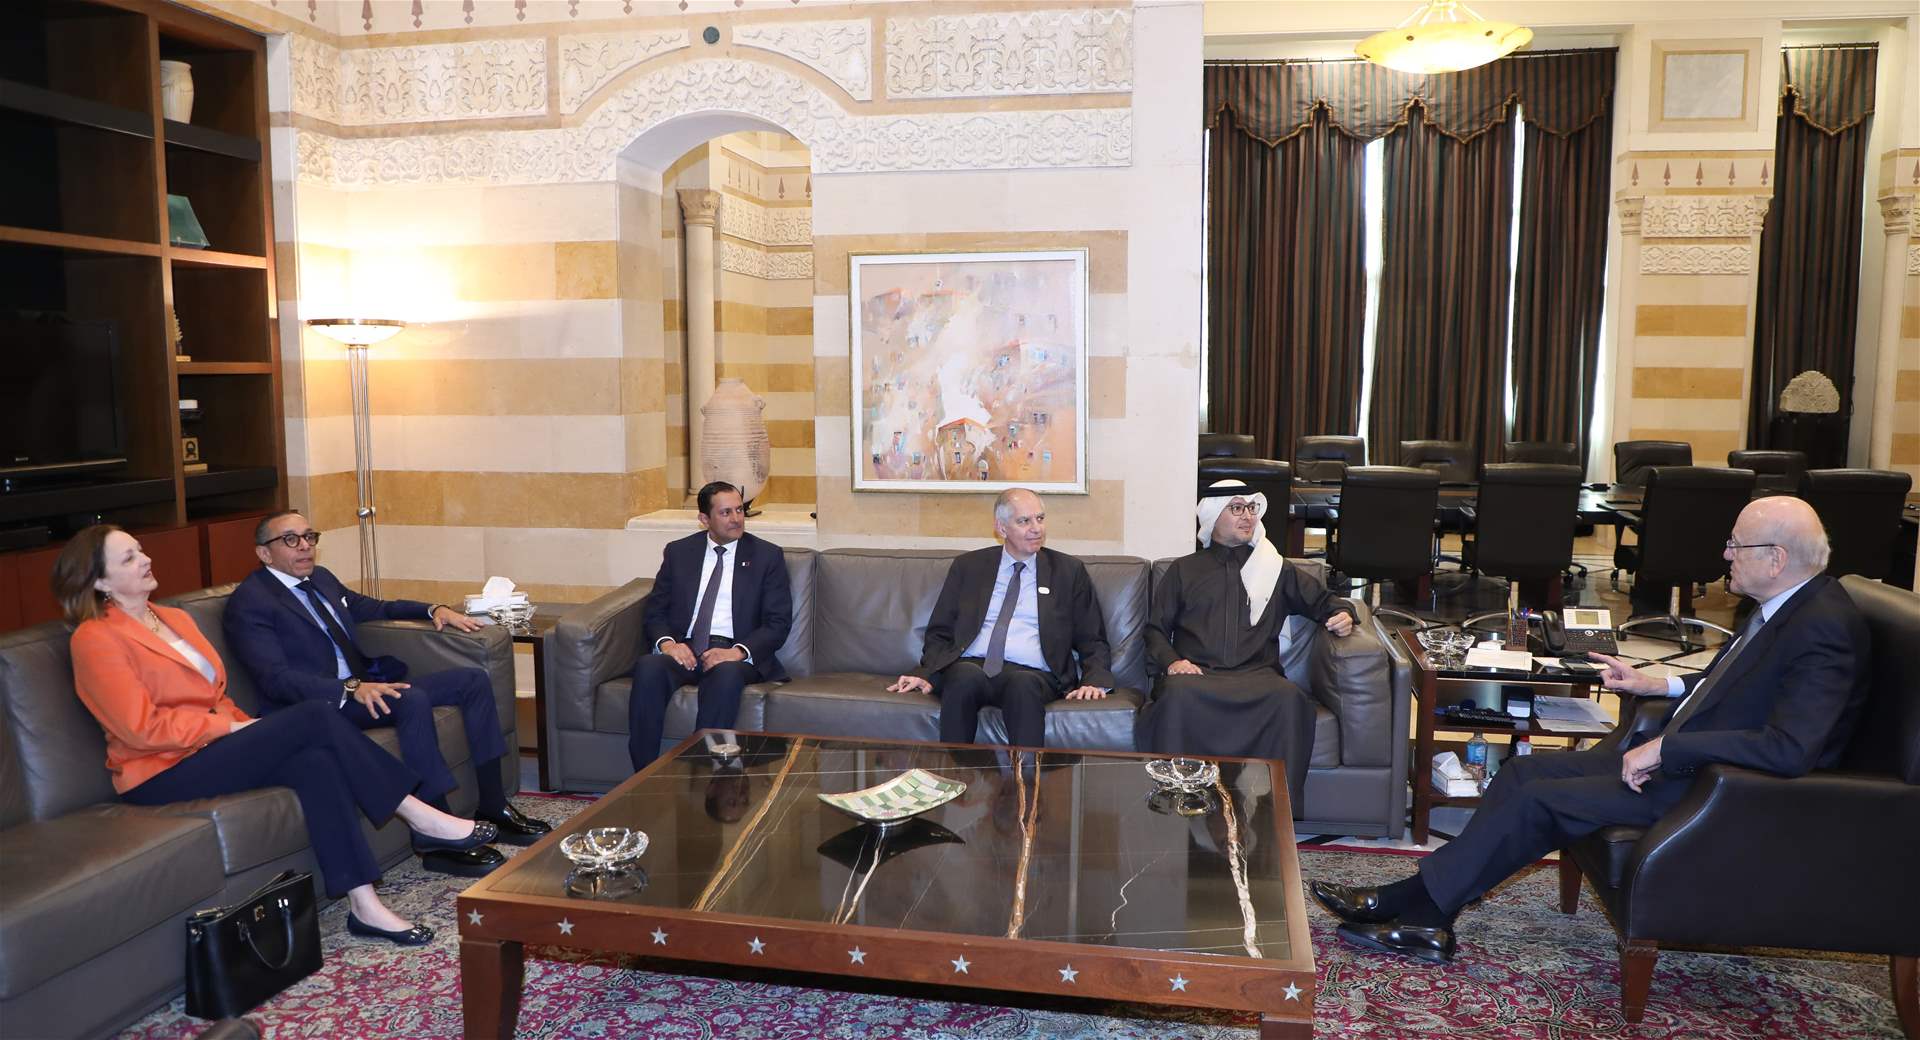 بالصور- اجتماع ميقاتي وسفراء اللجنة الخماسية بالسراي الحكومي